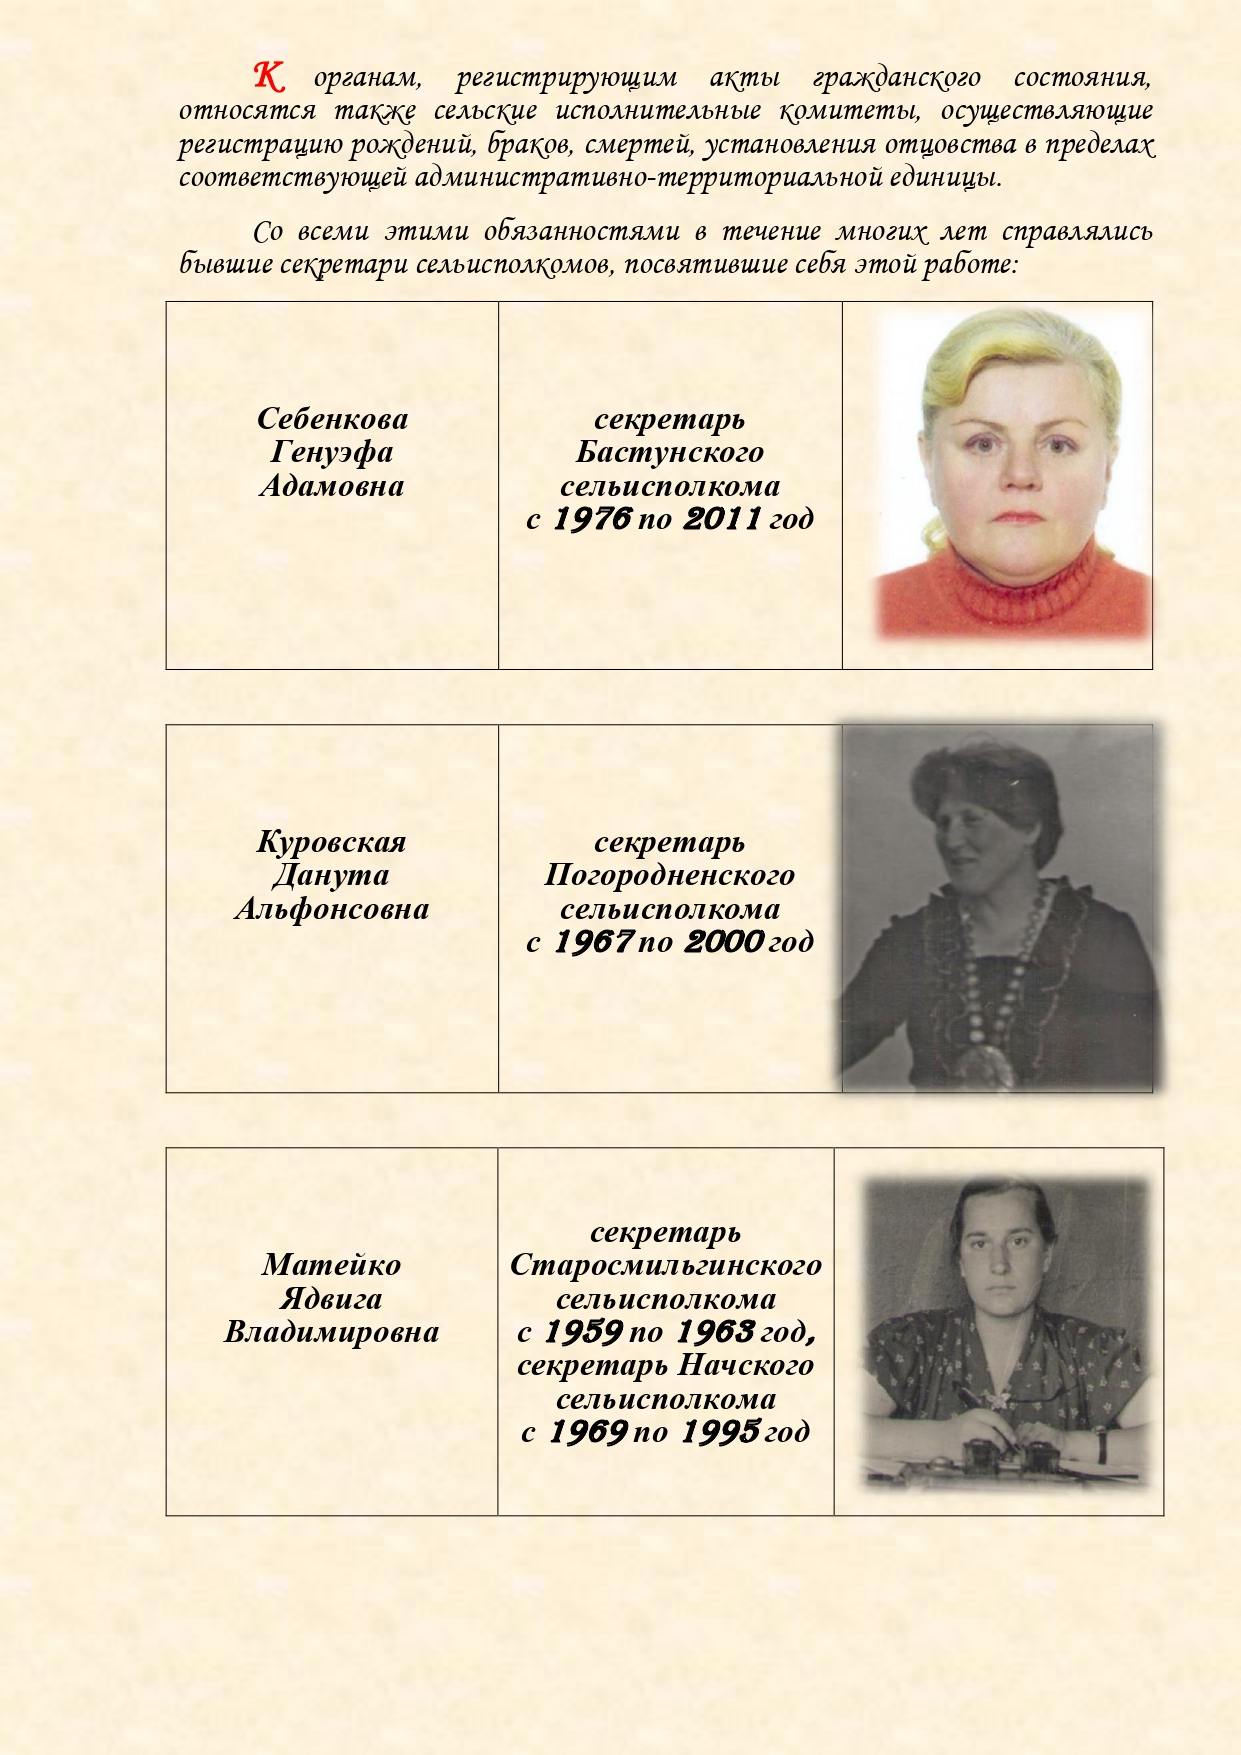 История органов загса Вороновского района с изменениями (1)_page-0007.jpg